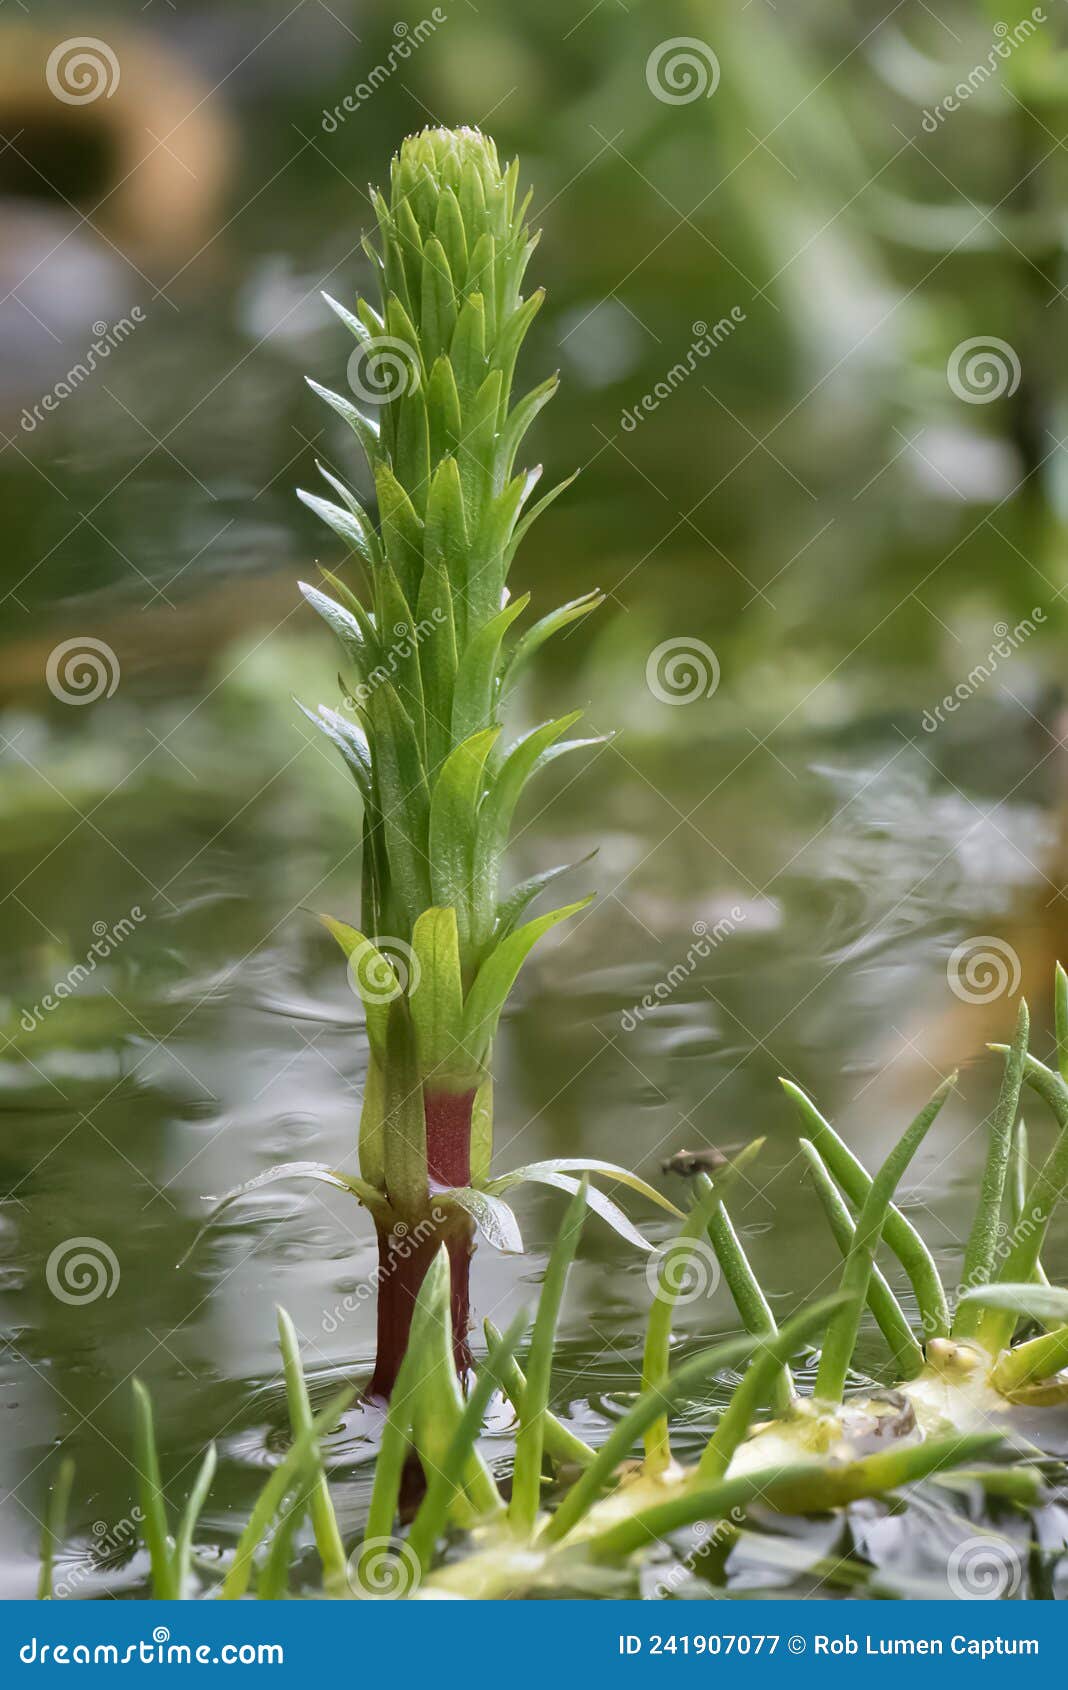 mareâs-tail hippuris vulgaris, single plant in pond